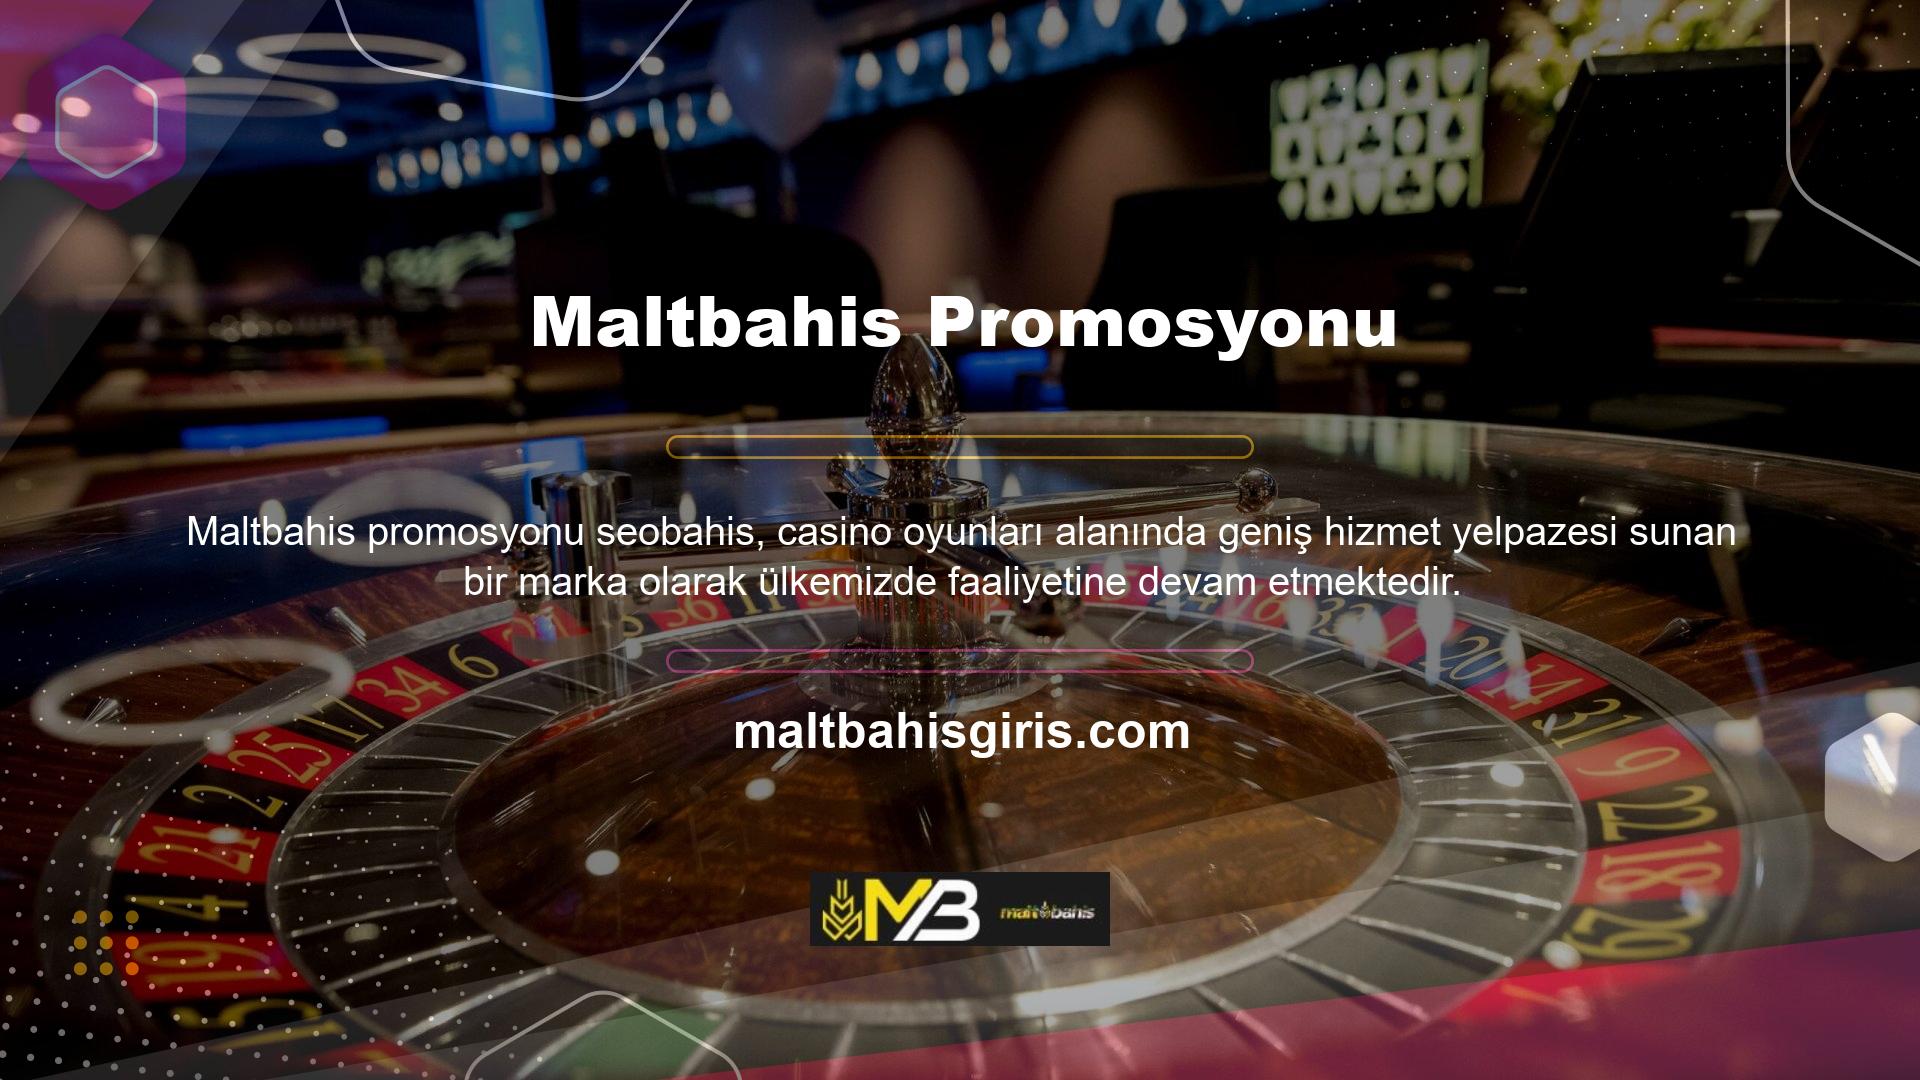 Slot makinelerinden masa ve kart oyunlarına, canlı casino yayınlarına kadar her şey sitede mevcuttur